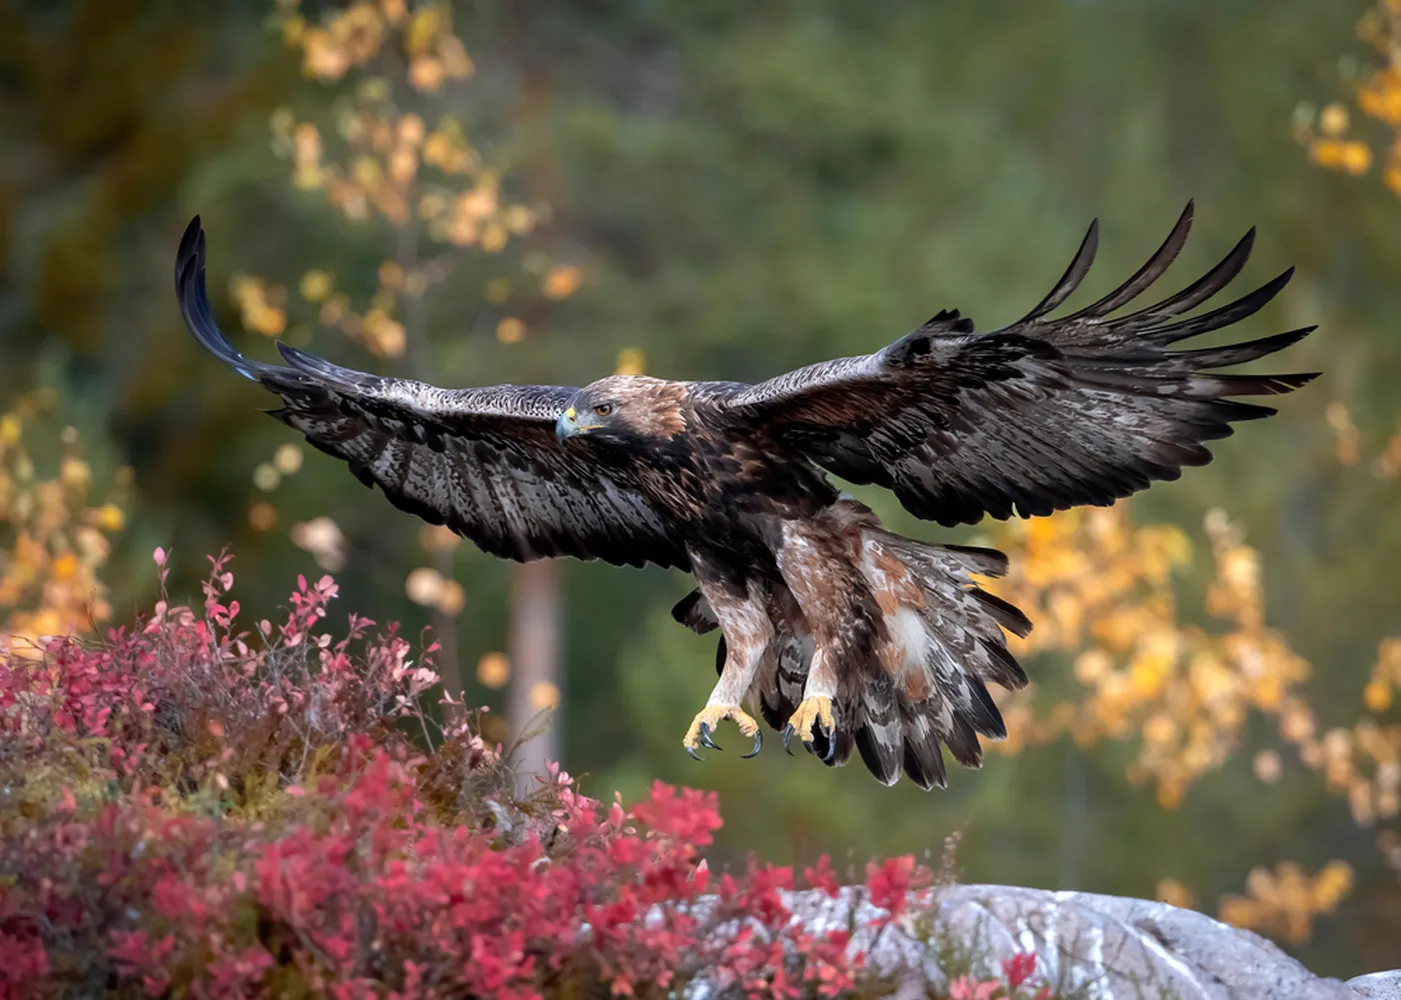 پوستر حیوانات طرح فرود عقاب در جنگل پاییزی